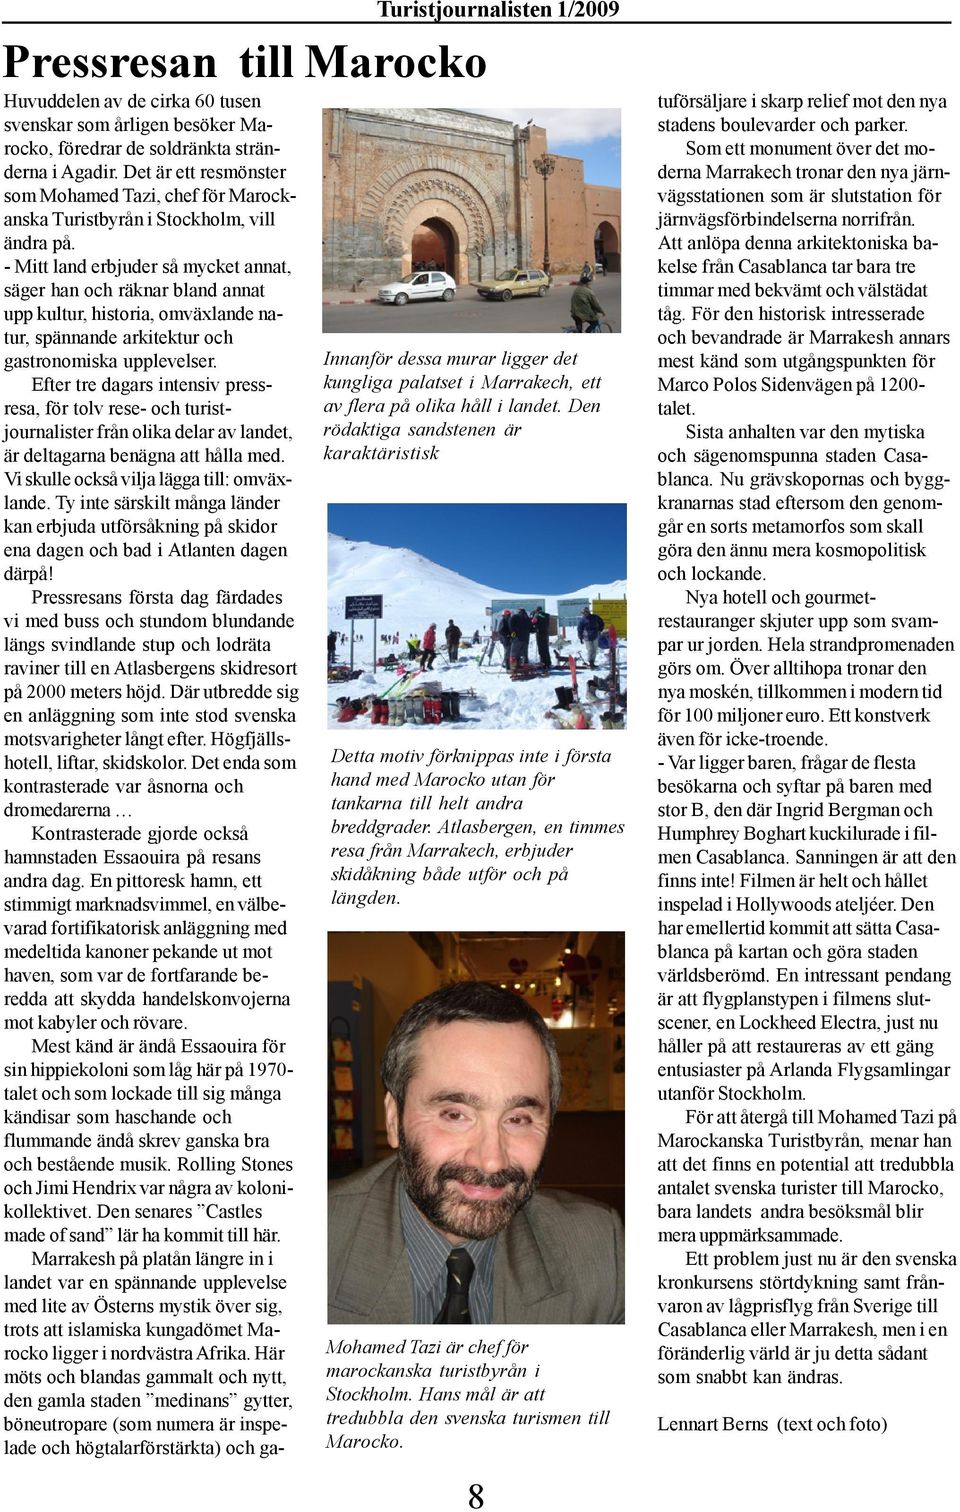 Atlasbergen, en timmes resa från Marrakech, erbjuder skidåkning både utför och på längden. Mohamed Tazi är chef för marockanska turistbyrån i Stockholm.